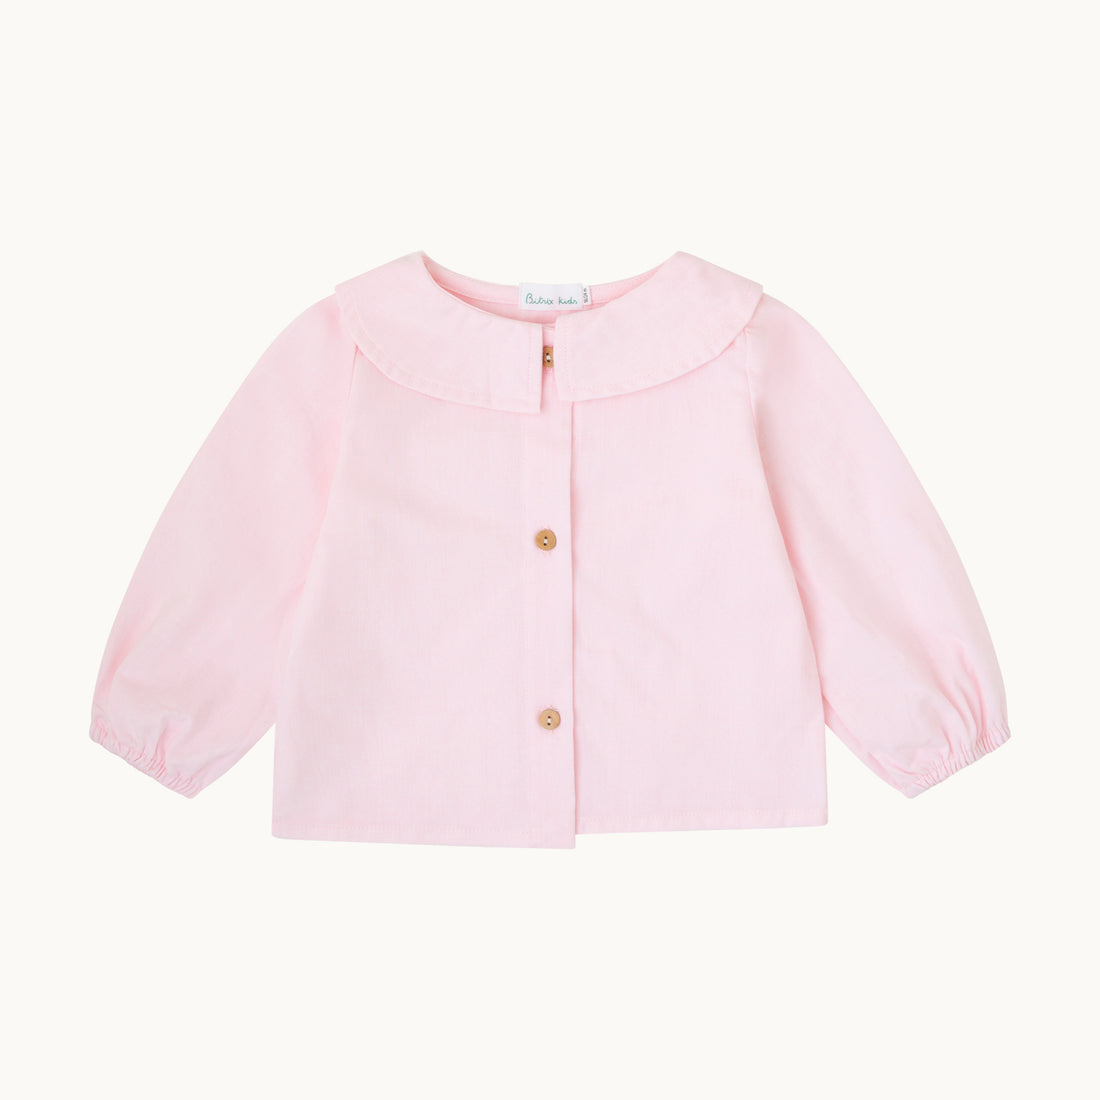 Blusa bebé-Oxford rosa